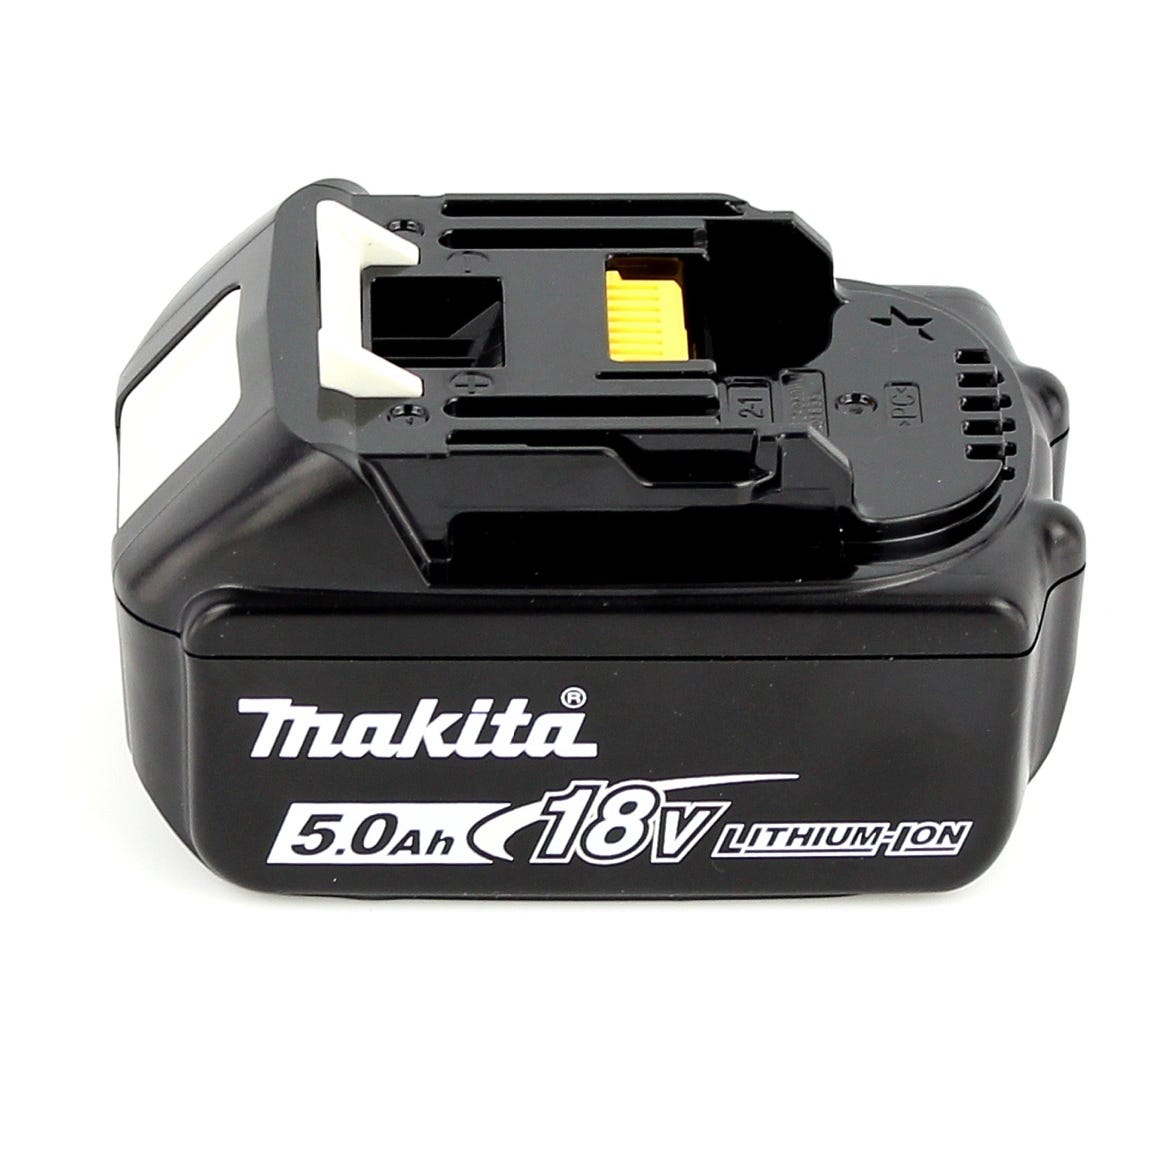 Makita DJV 180 T1J Scie sauteuse sans fil 18V + 1x Batterie 5.0Ah + Makpac - sans chargeur 3